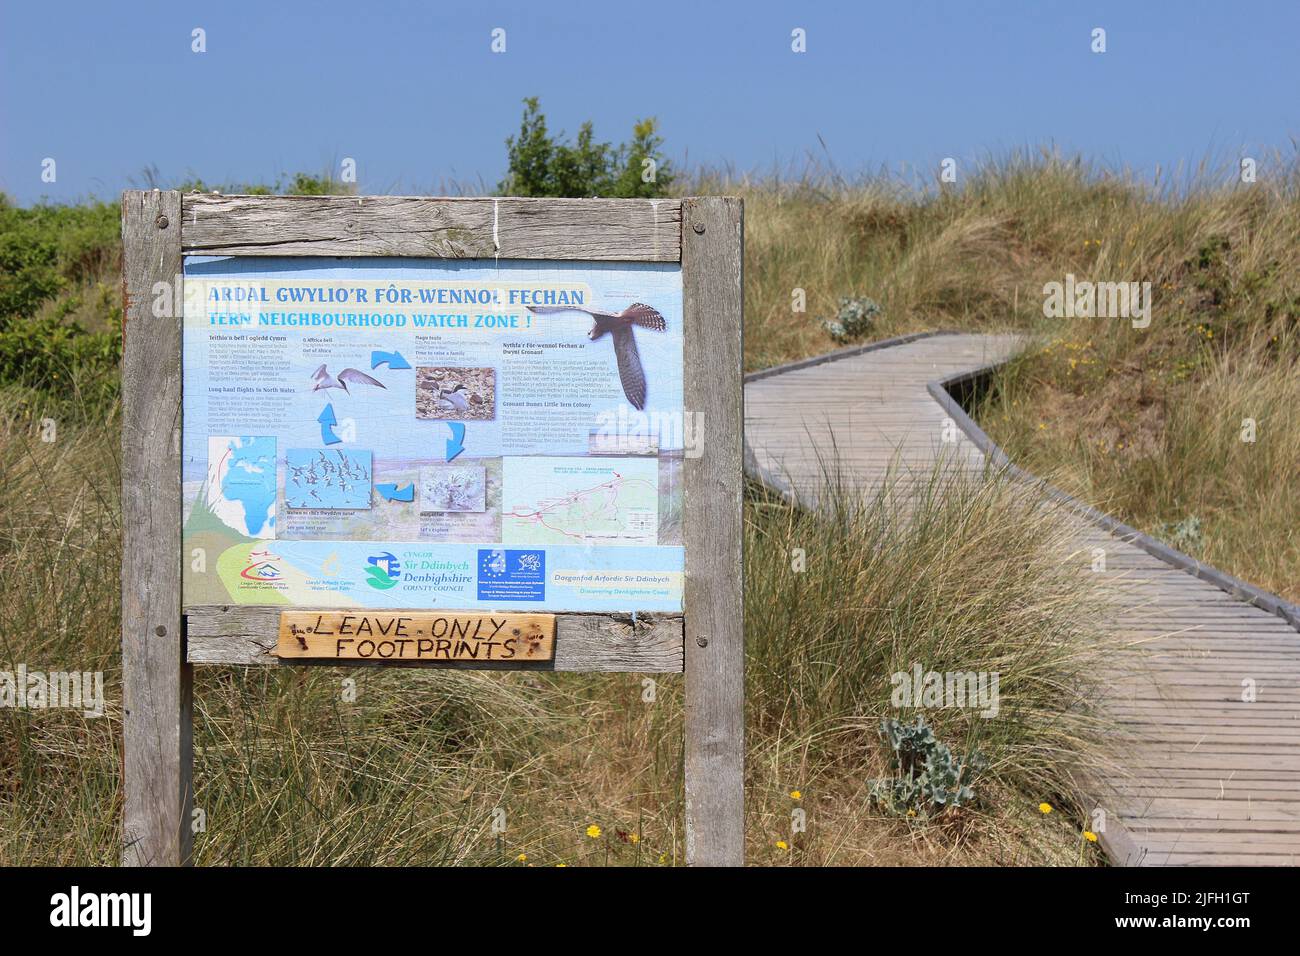 Informationen Zeichen an gronant Dünen SSSI, Wales - der Standort einer zuchtpopulation von Zwergseeschwalben Stockfoto